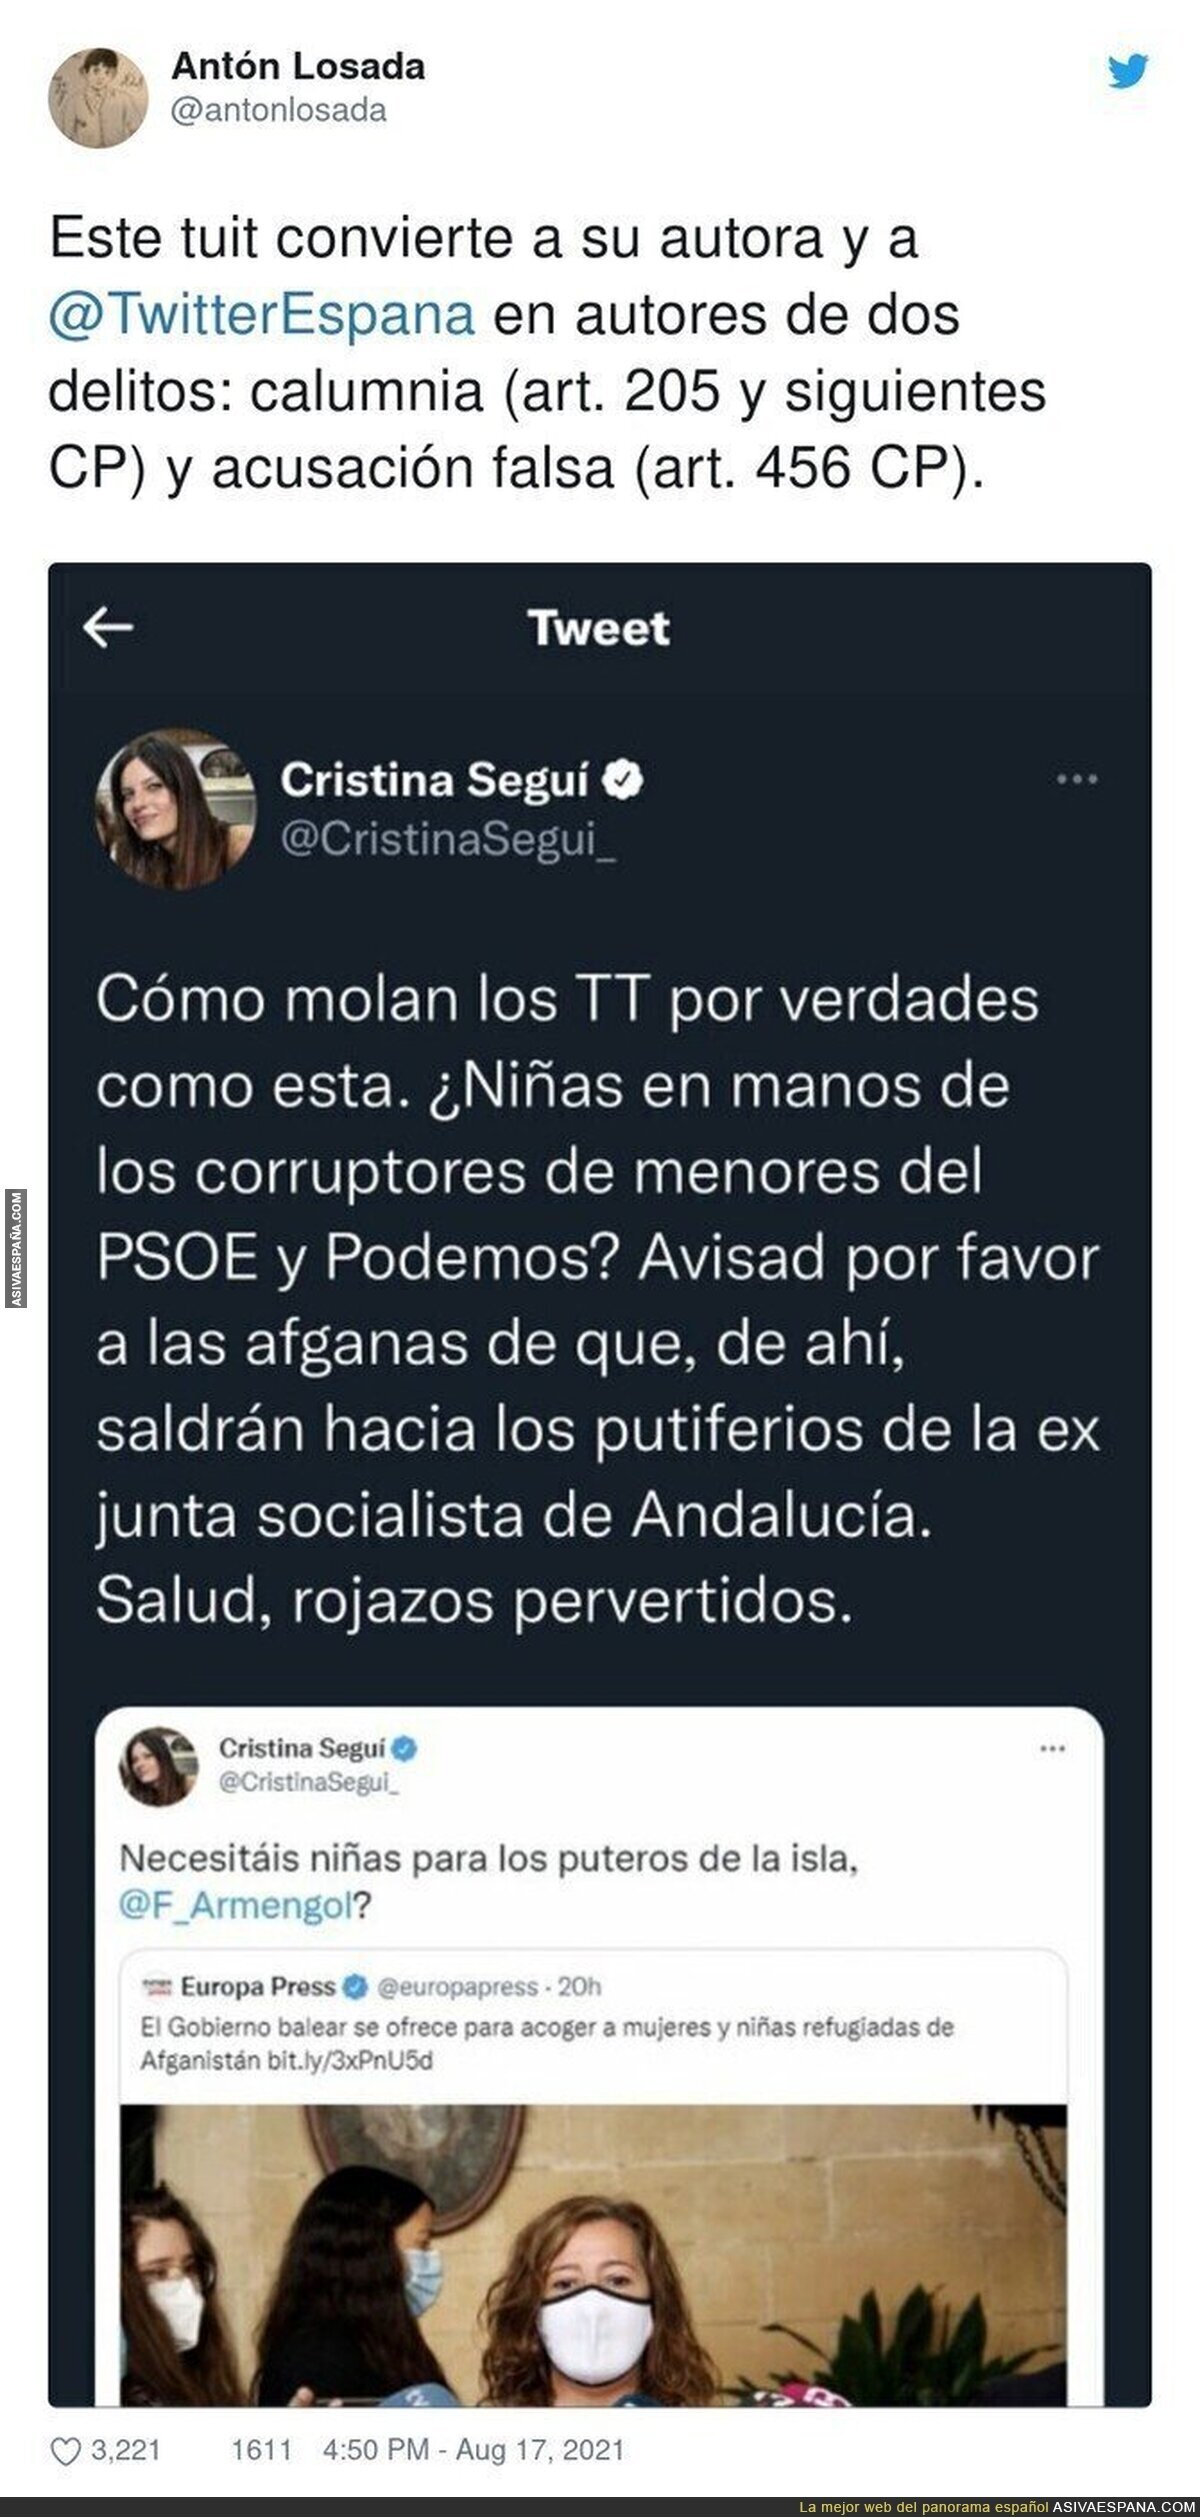 El peligroso tuit de Cristina Seguí por el que debería ser denunciada